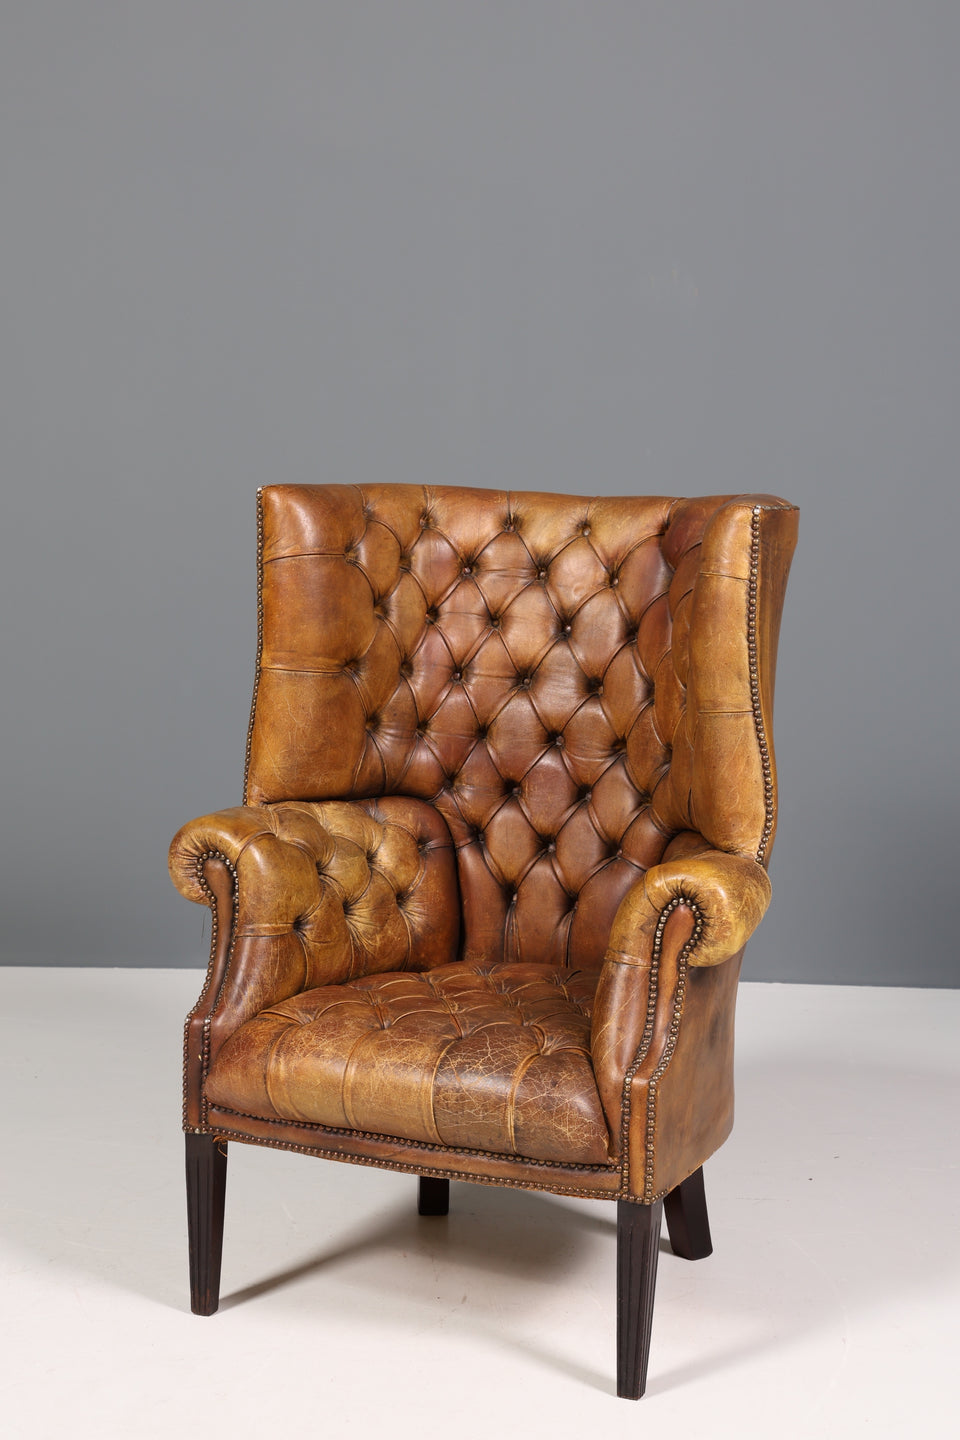 Original Chesterfield echt Leder Sessel Vintage Wing Chair Ohrenbacken Armlehnsessel Barrel Chair Antik